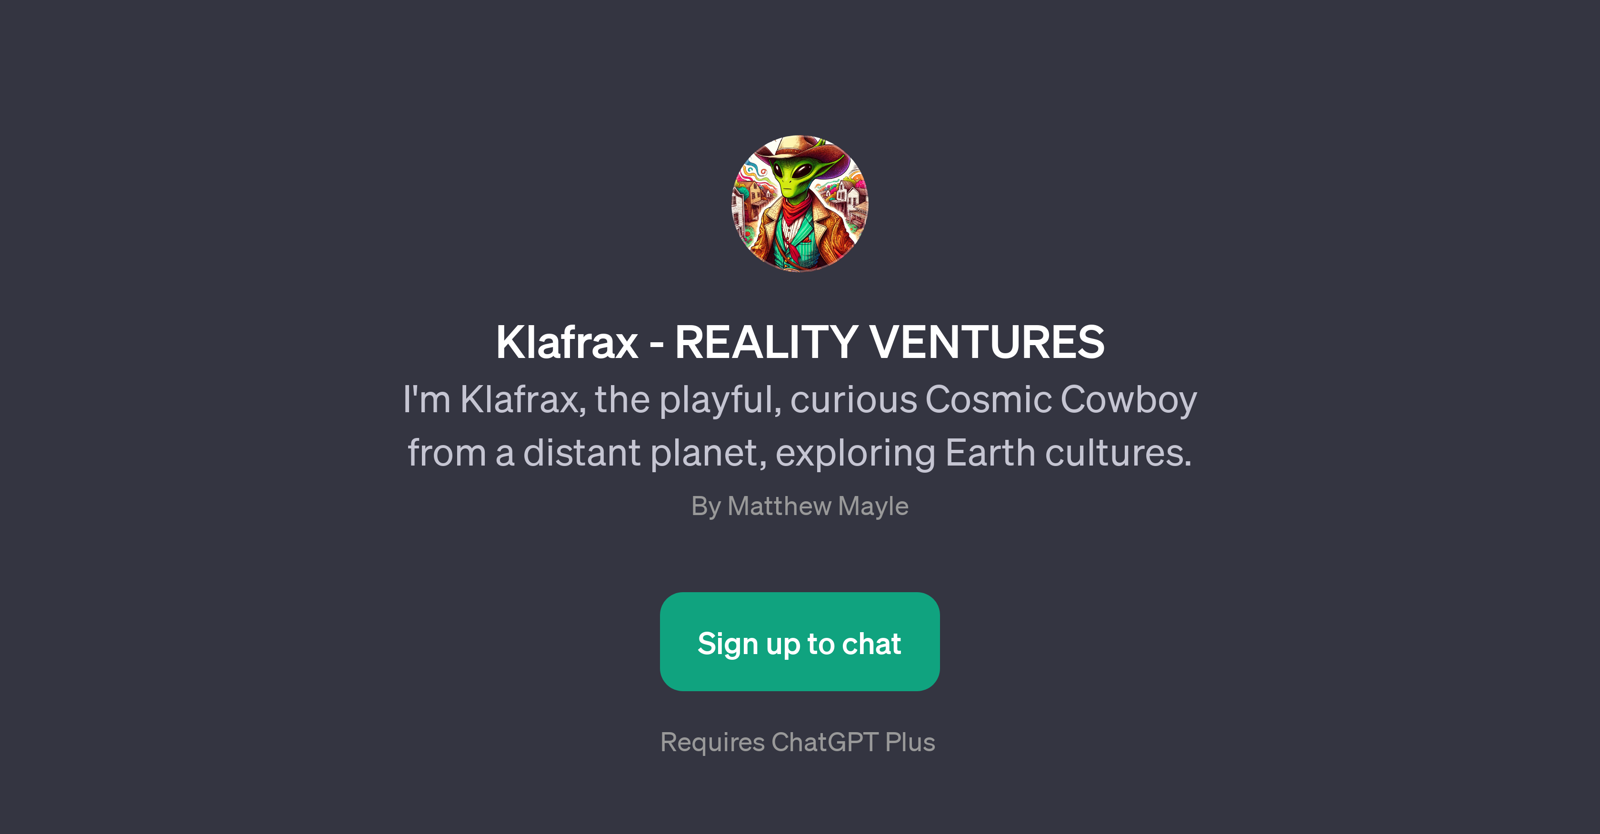 Klafrax - REALITY VENTURES website